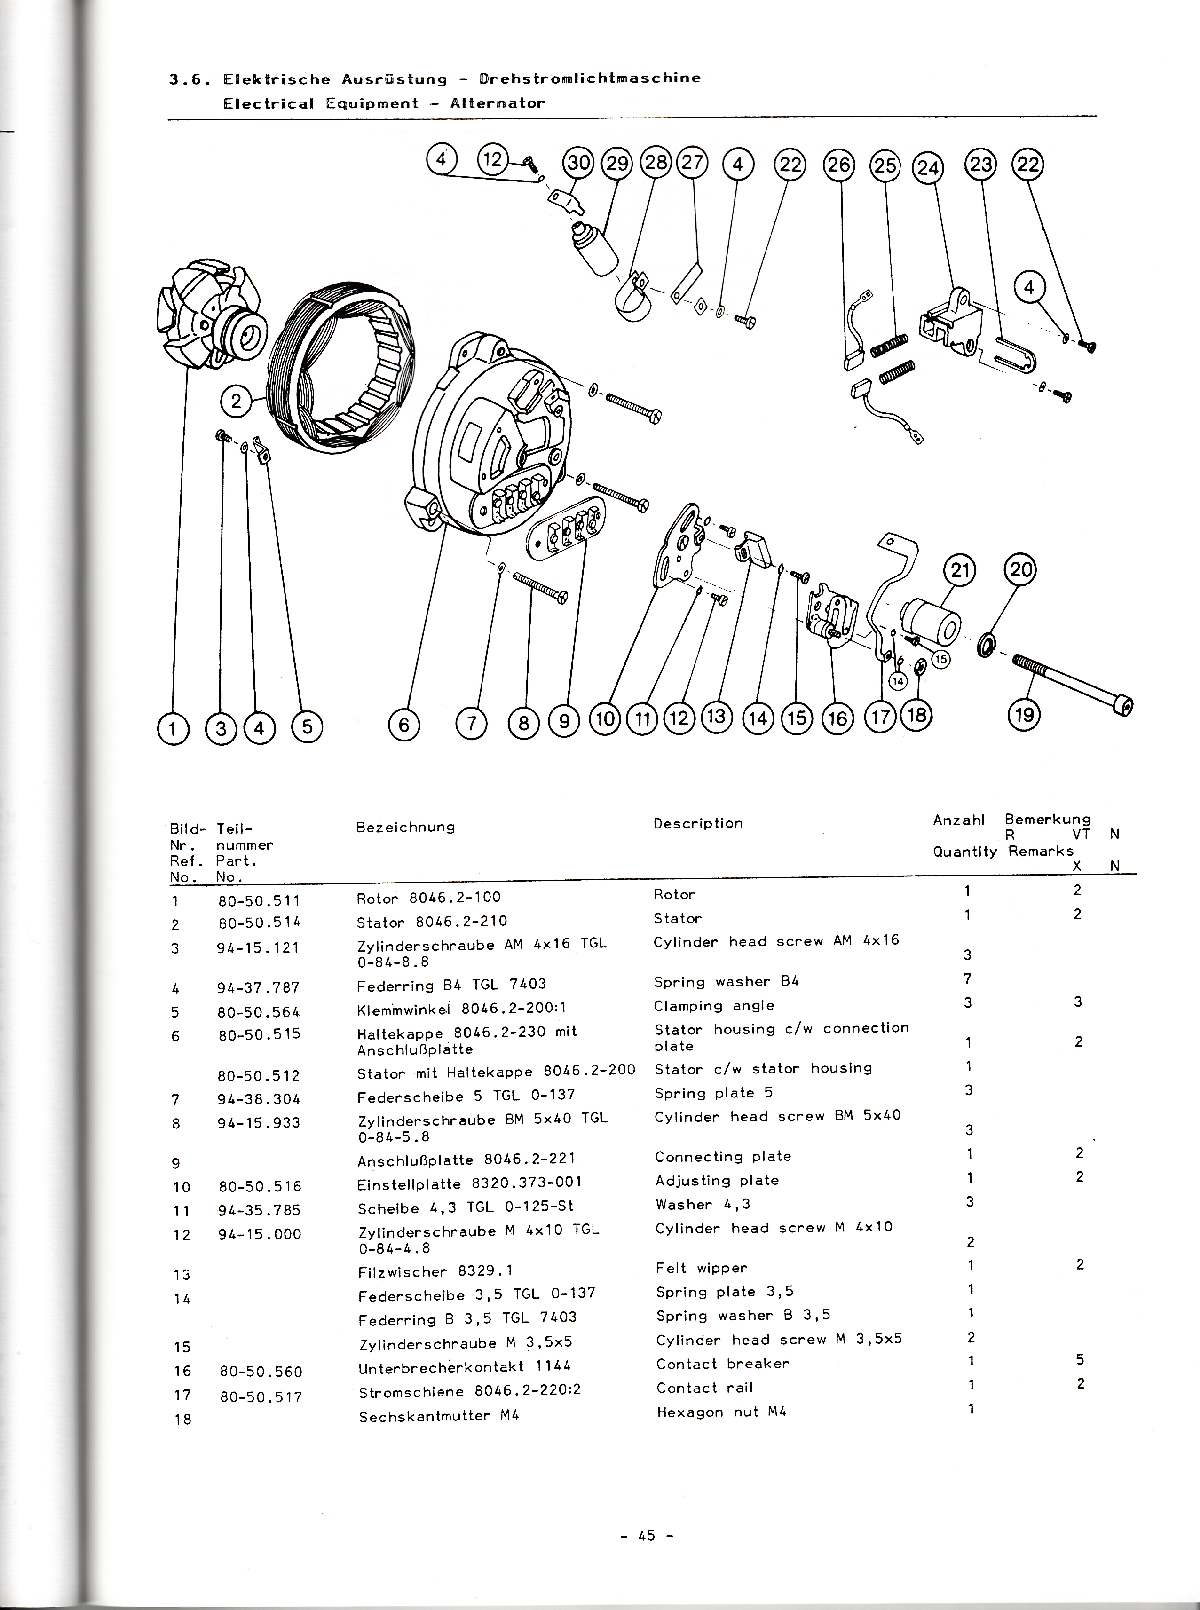 Katalog MZ 251 ETZ - 3.6. Elektrische Ausrüstung - Drehstrondichtmaschine 